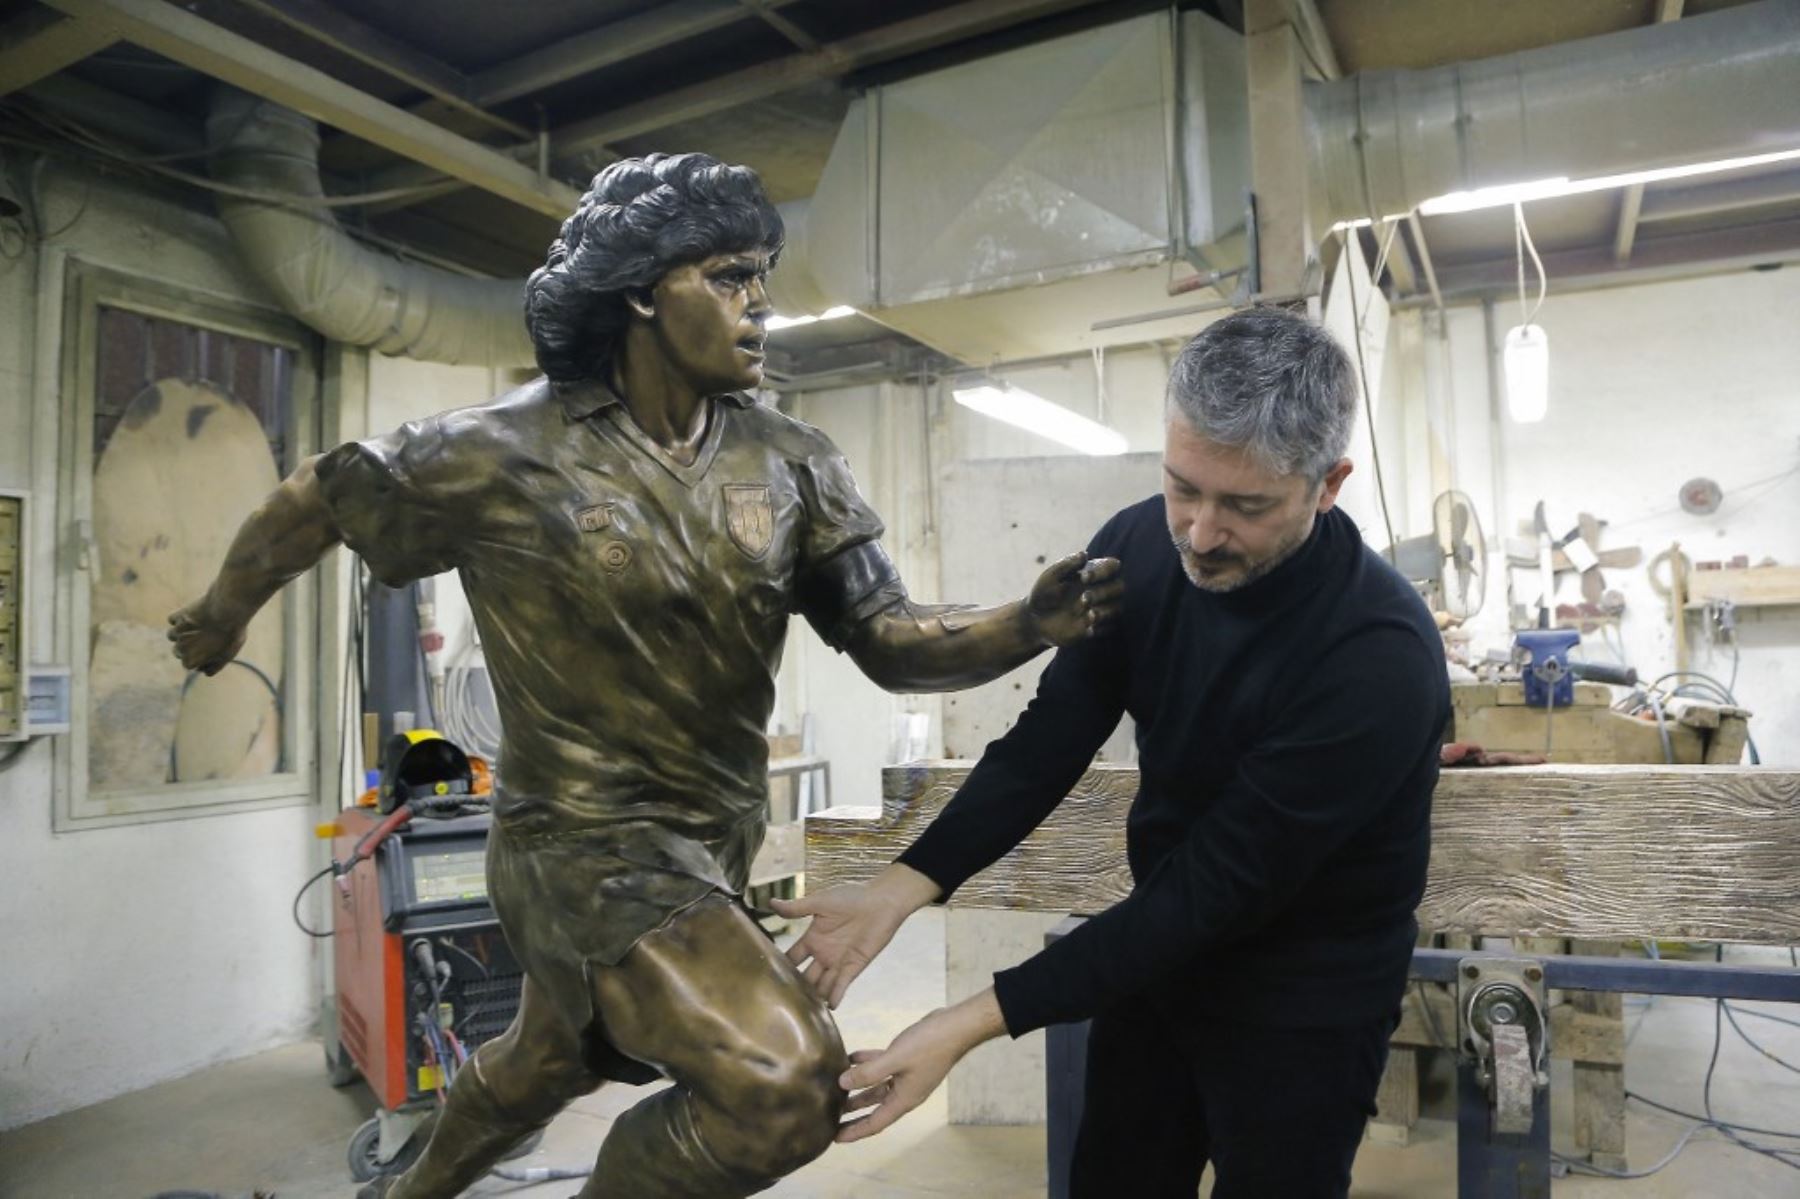 La ciudad de Nápoles contará mañana con una estatua de Diego Maradona hecha de bronce